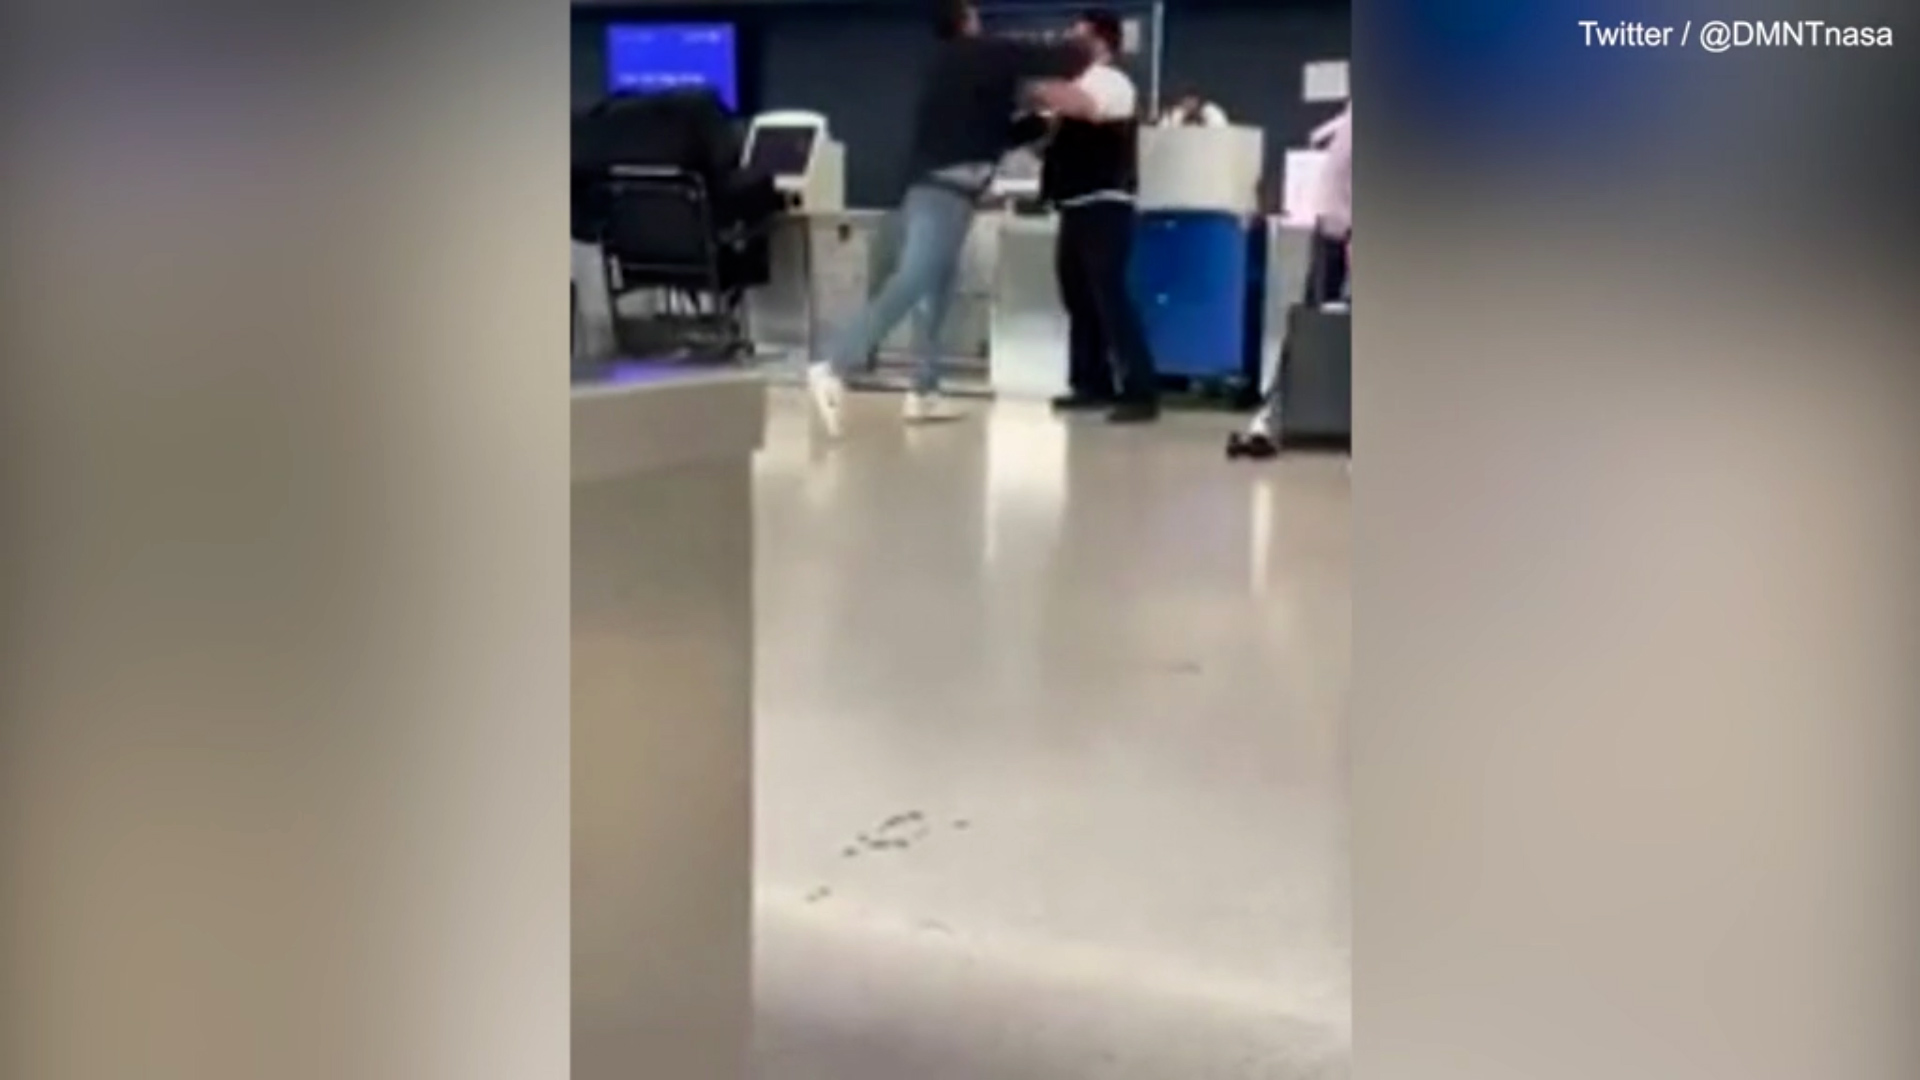 La brutal pelea a golpes entre un jugador de la NFL y un empleado de United Airlines en un aeropuerto de Nueva York